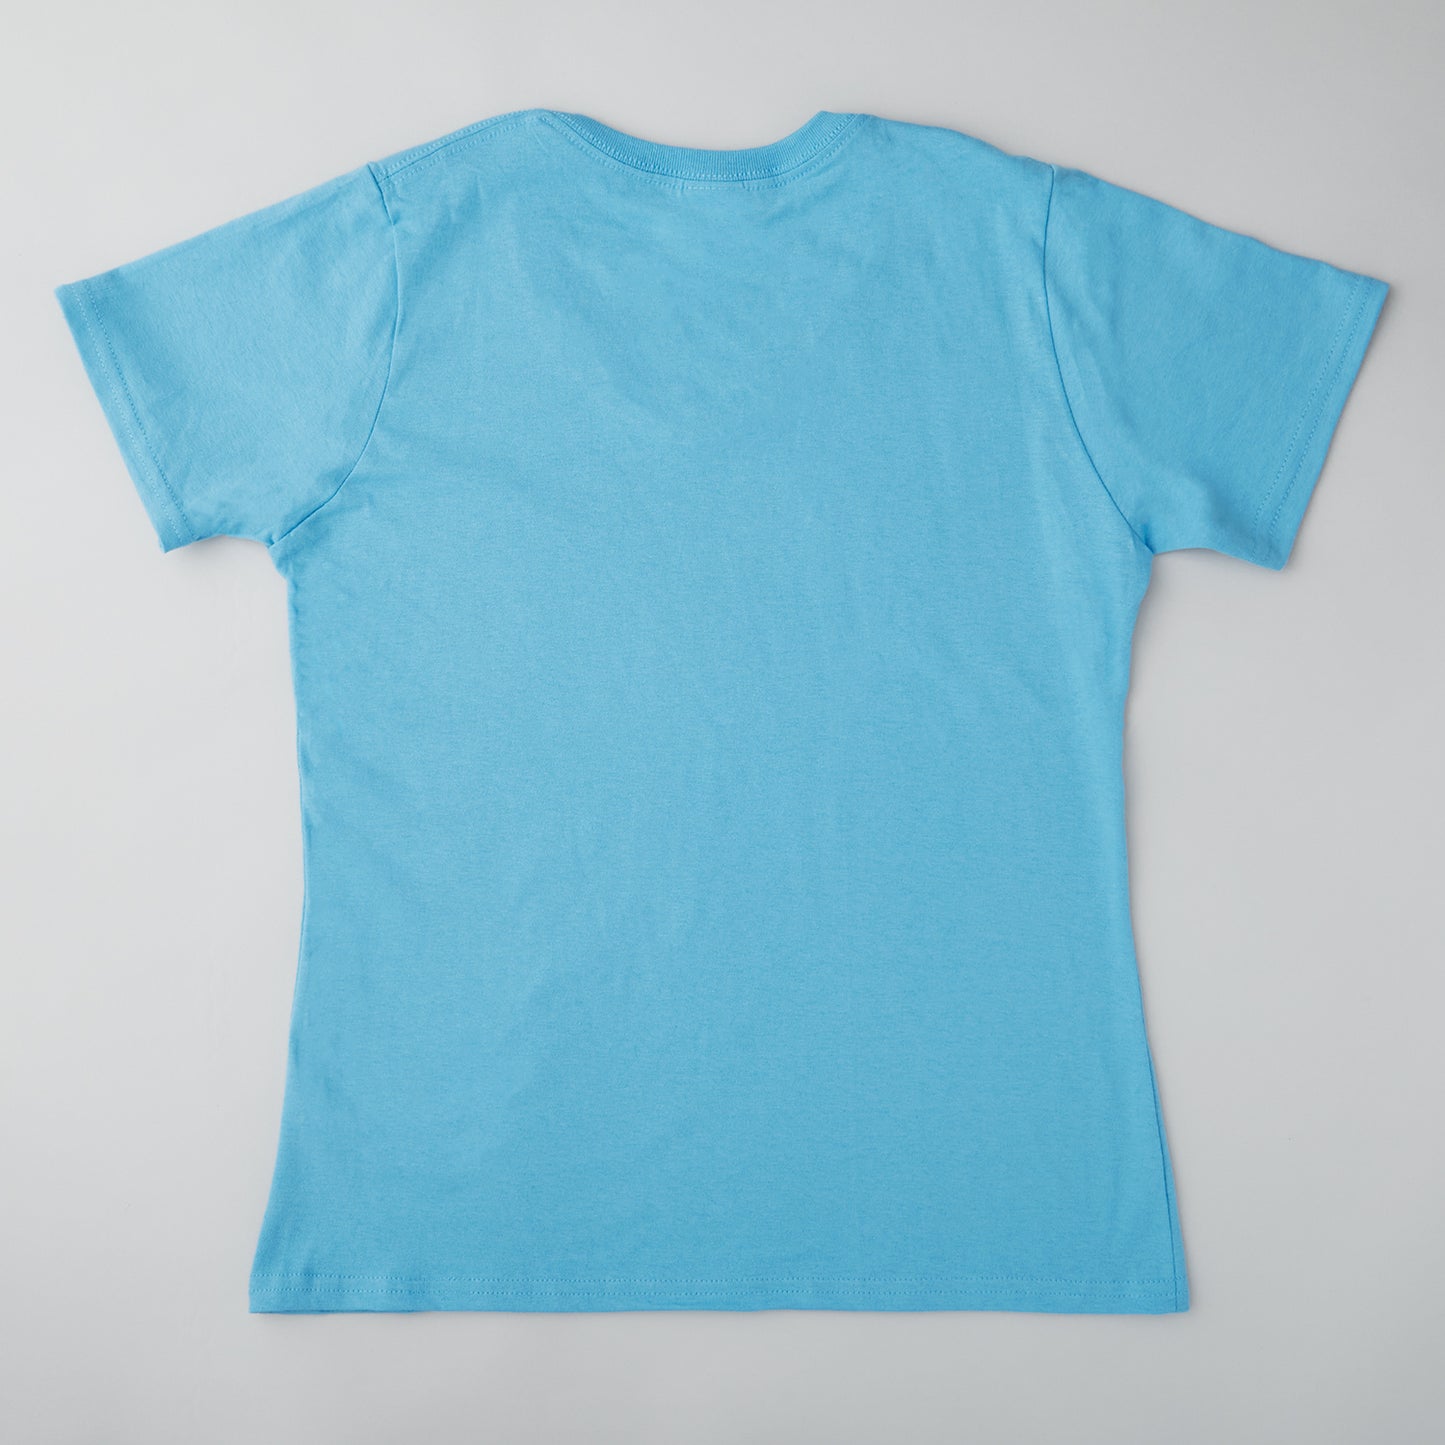 Quiltmaker T-shirt - Aquatic Blue 3XL Alternative View #1